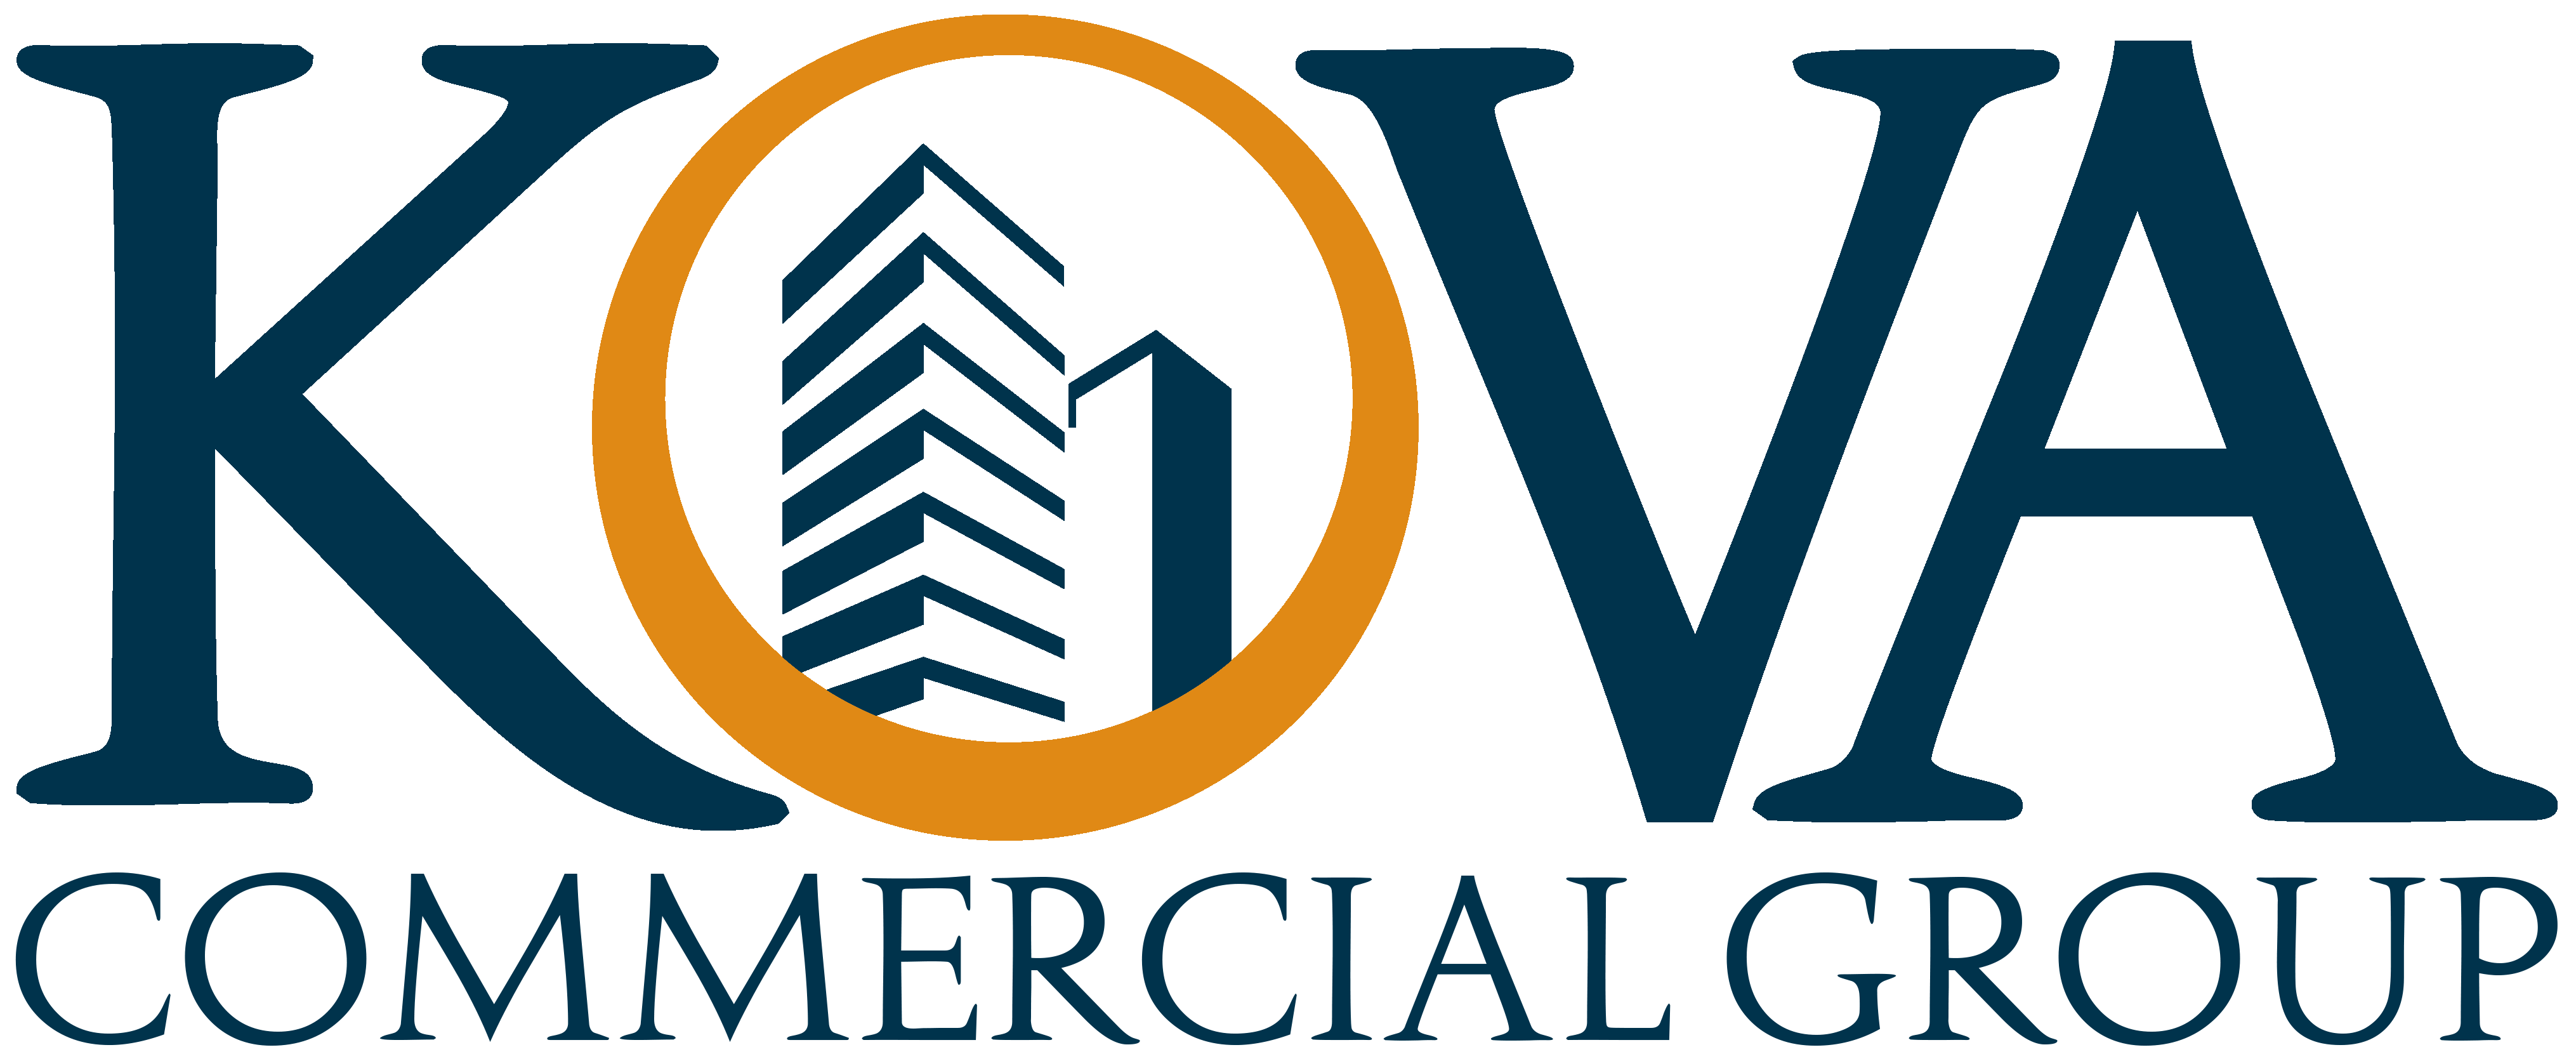 Logo KOVA Commercial Group